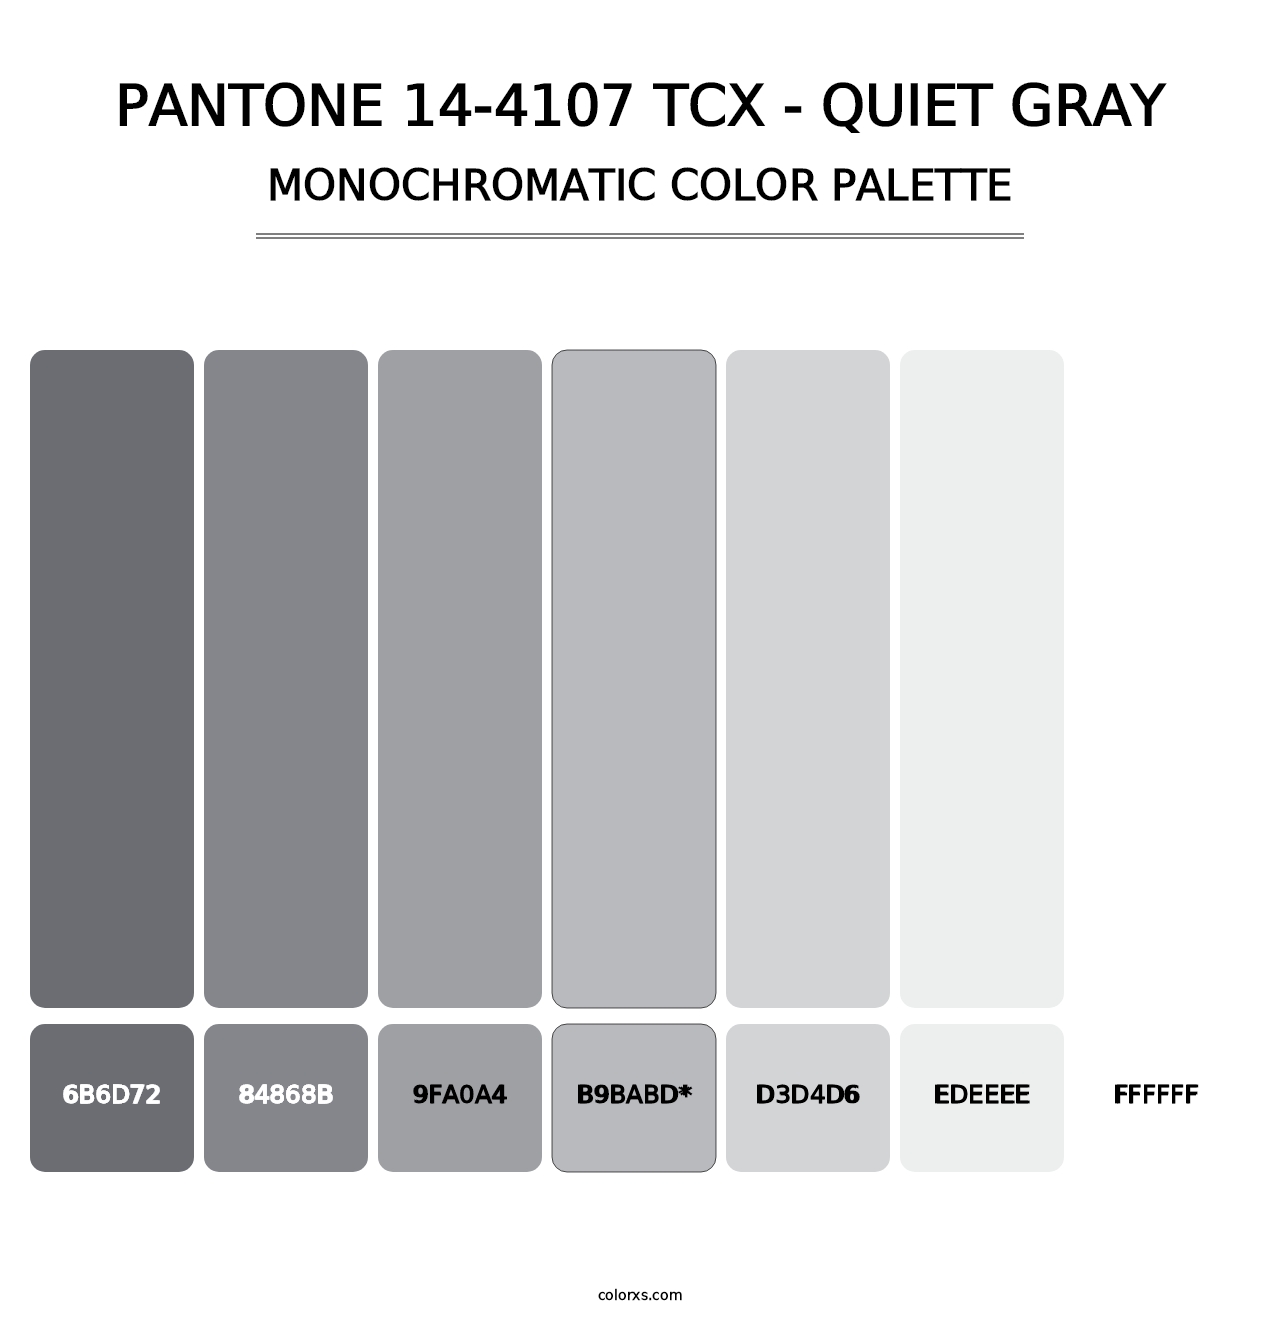 PANTONE 14-4107 TCX - Quiet Gray - Monochromatic Color Palette